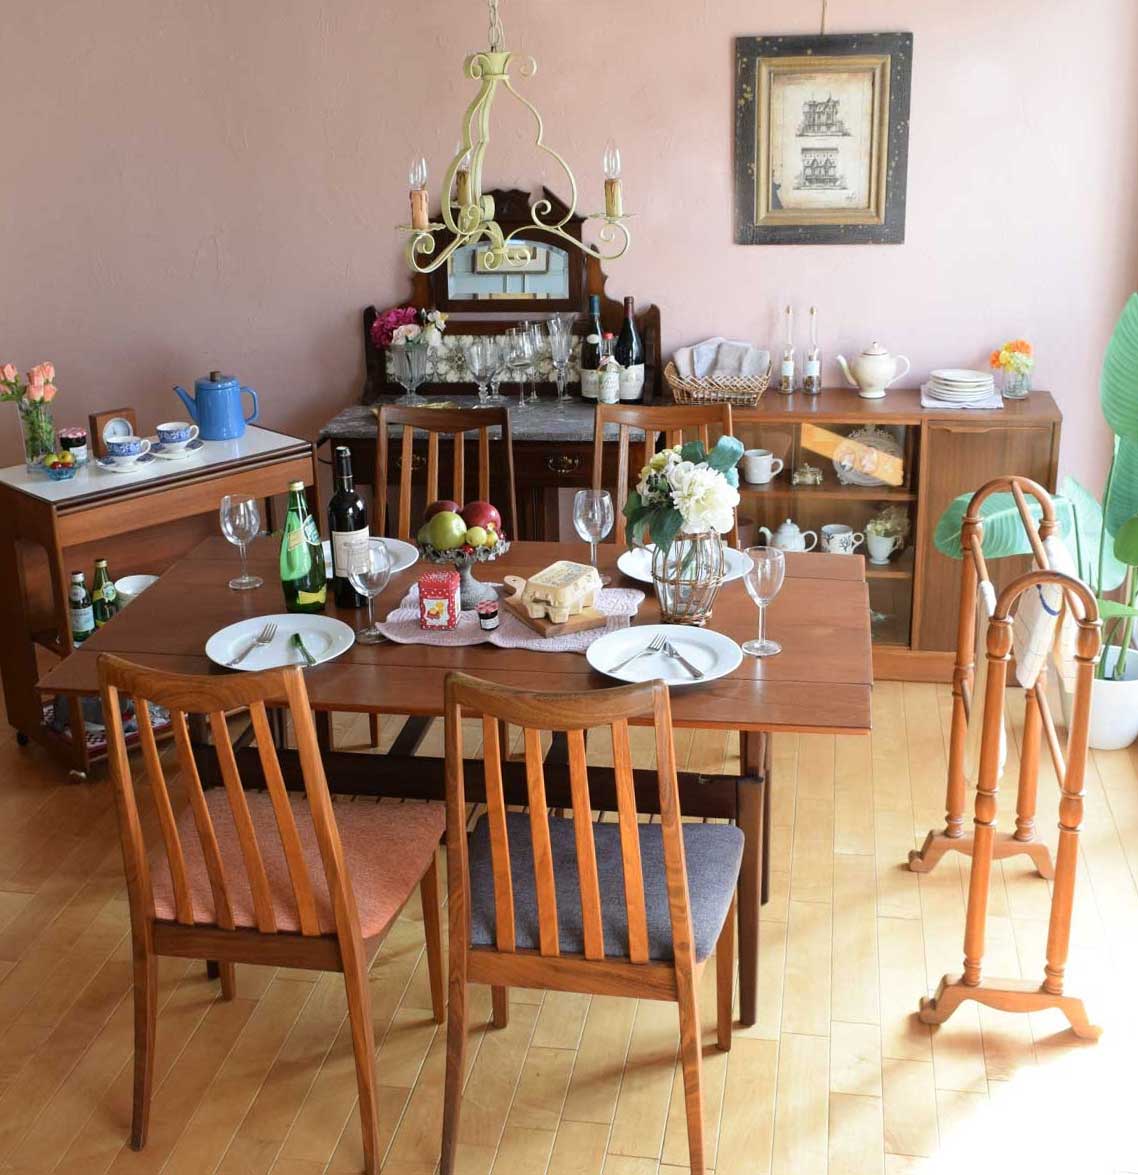 一人暮らしに便利な家具を集めた入学祝いを楽しむ食卓